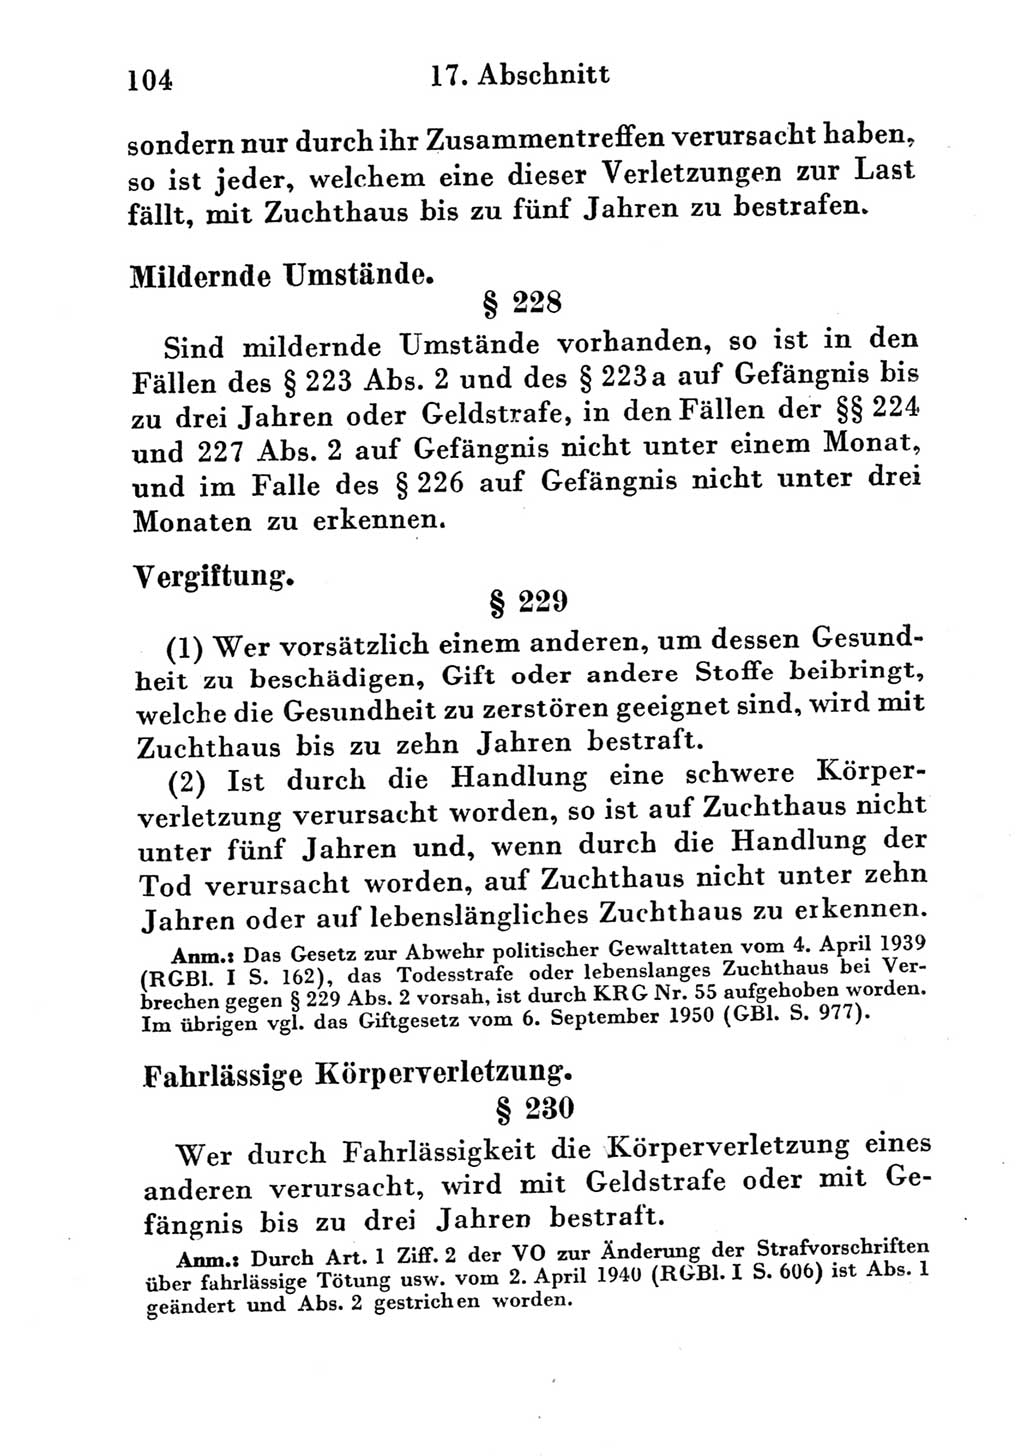 Strafgesetzbuch (StGB) und andere Strafgesetze [Deutsche Demokratische Republik (DDR)] 1951, Seite 104 (StGB Strafges. DDR 1951, S. 104)